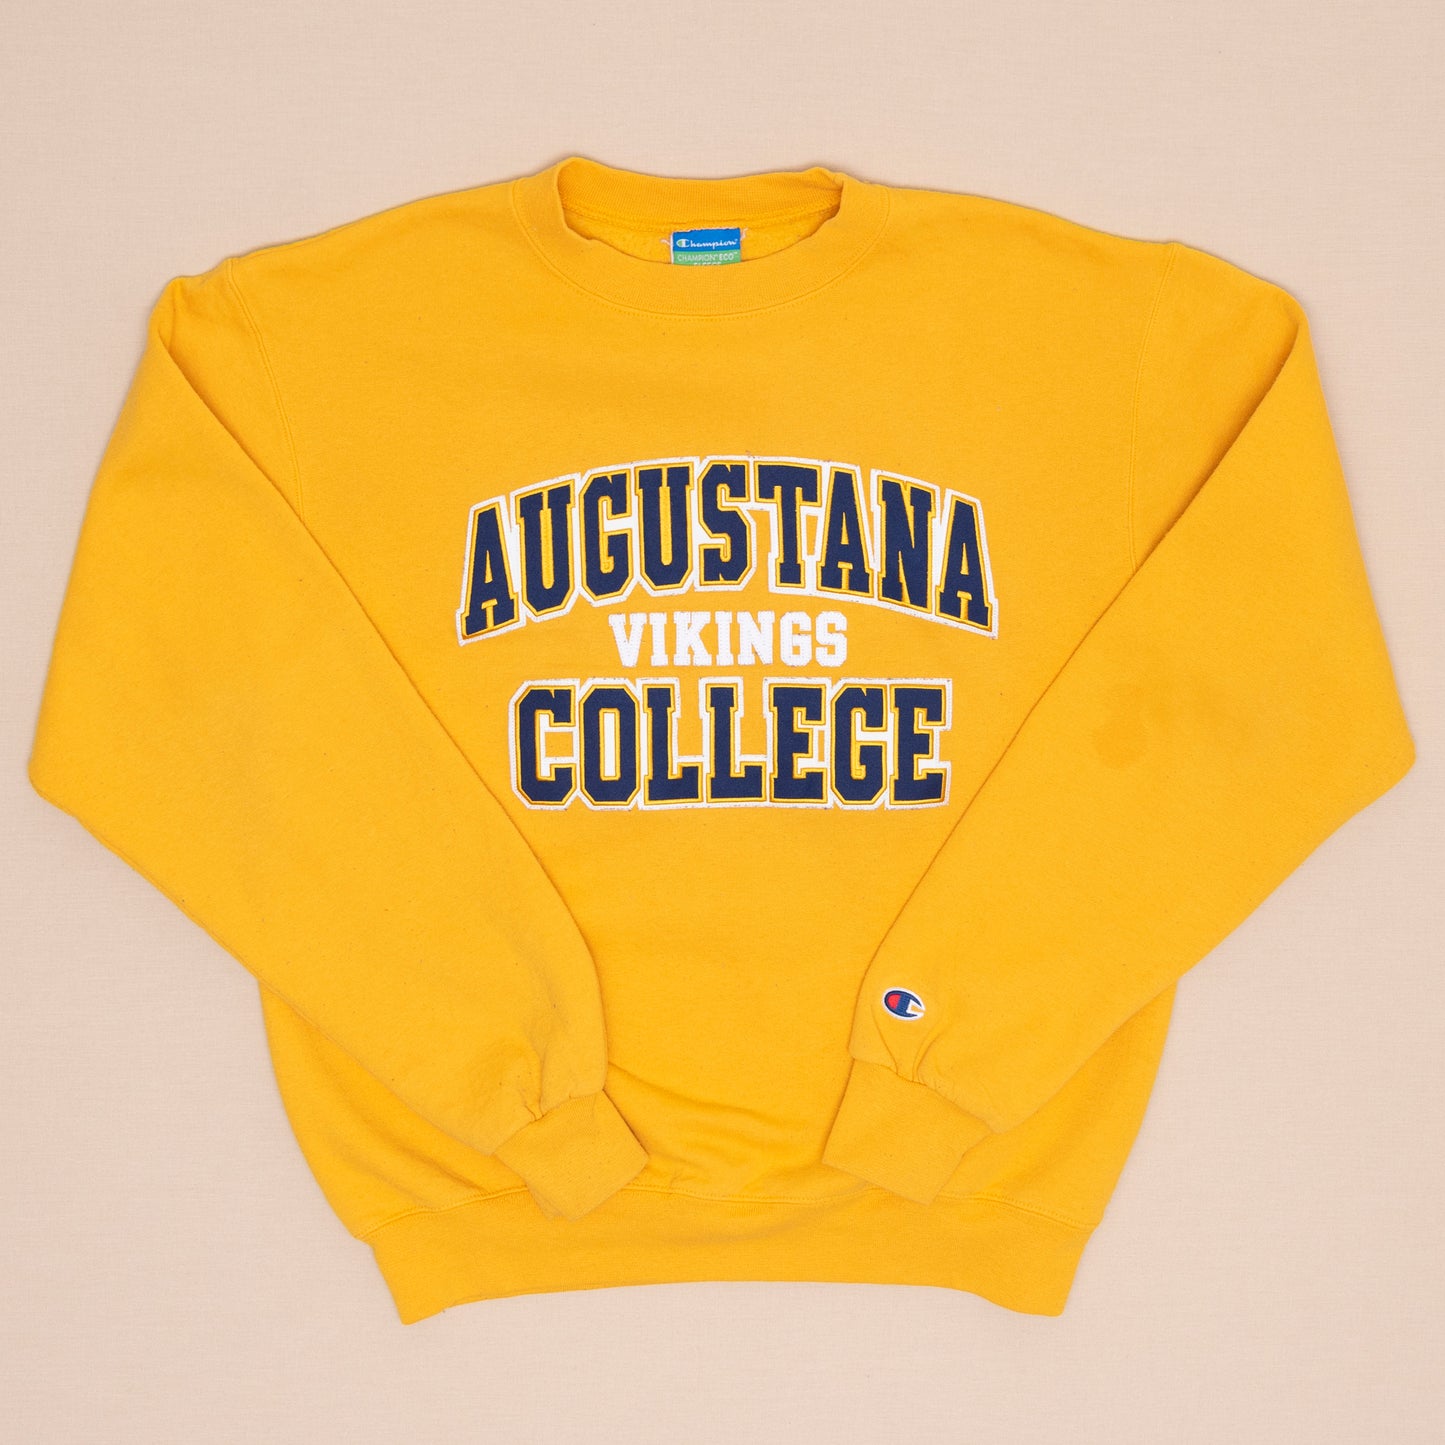 Augustana Vikings Sweater, S